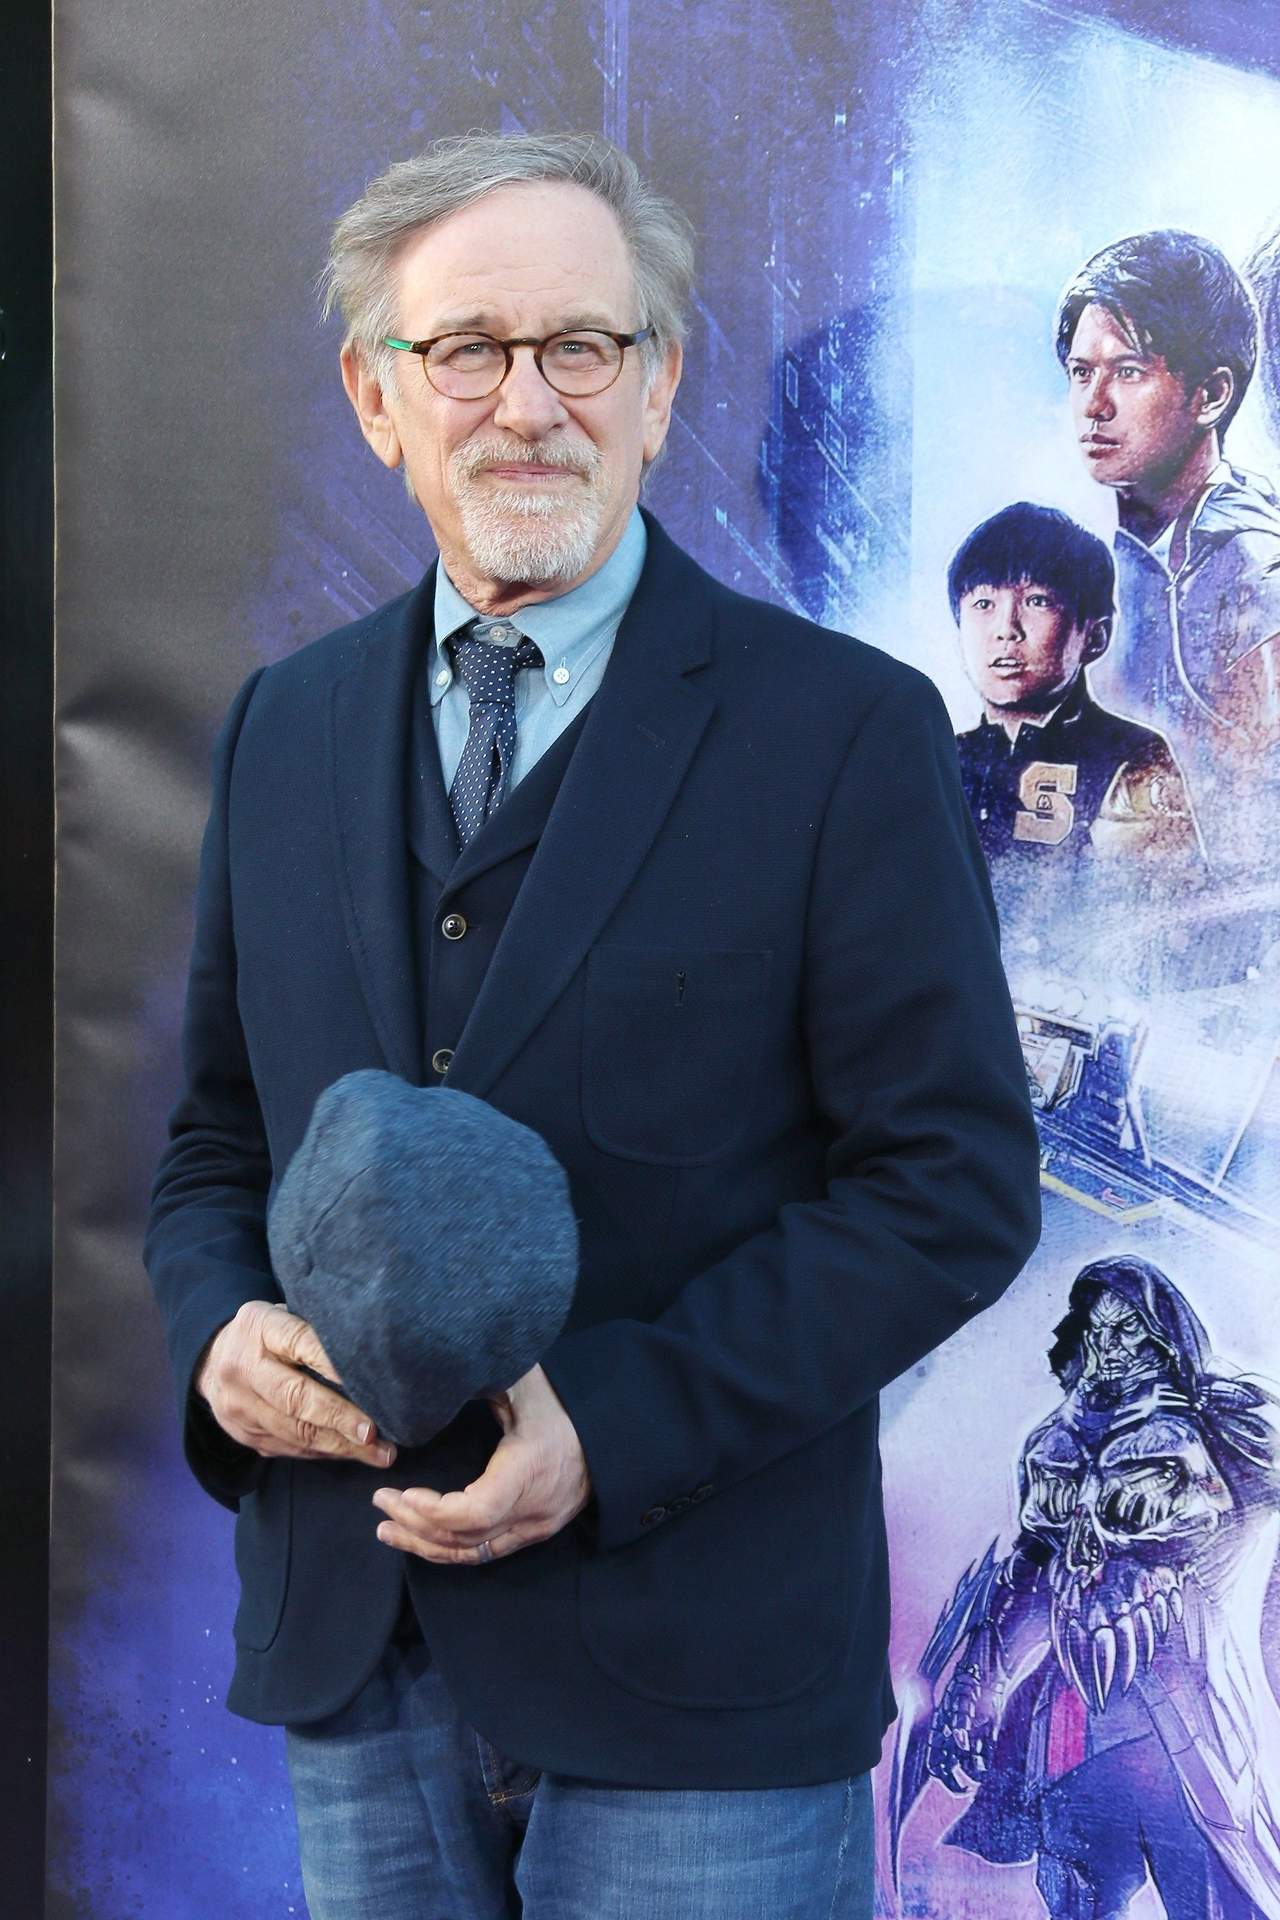  Steven Spielberg será el encargado de producir la miniserie sobre la vida de Hernán Cortés. (ARCHIVO)